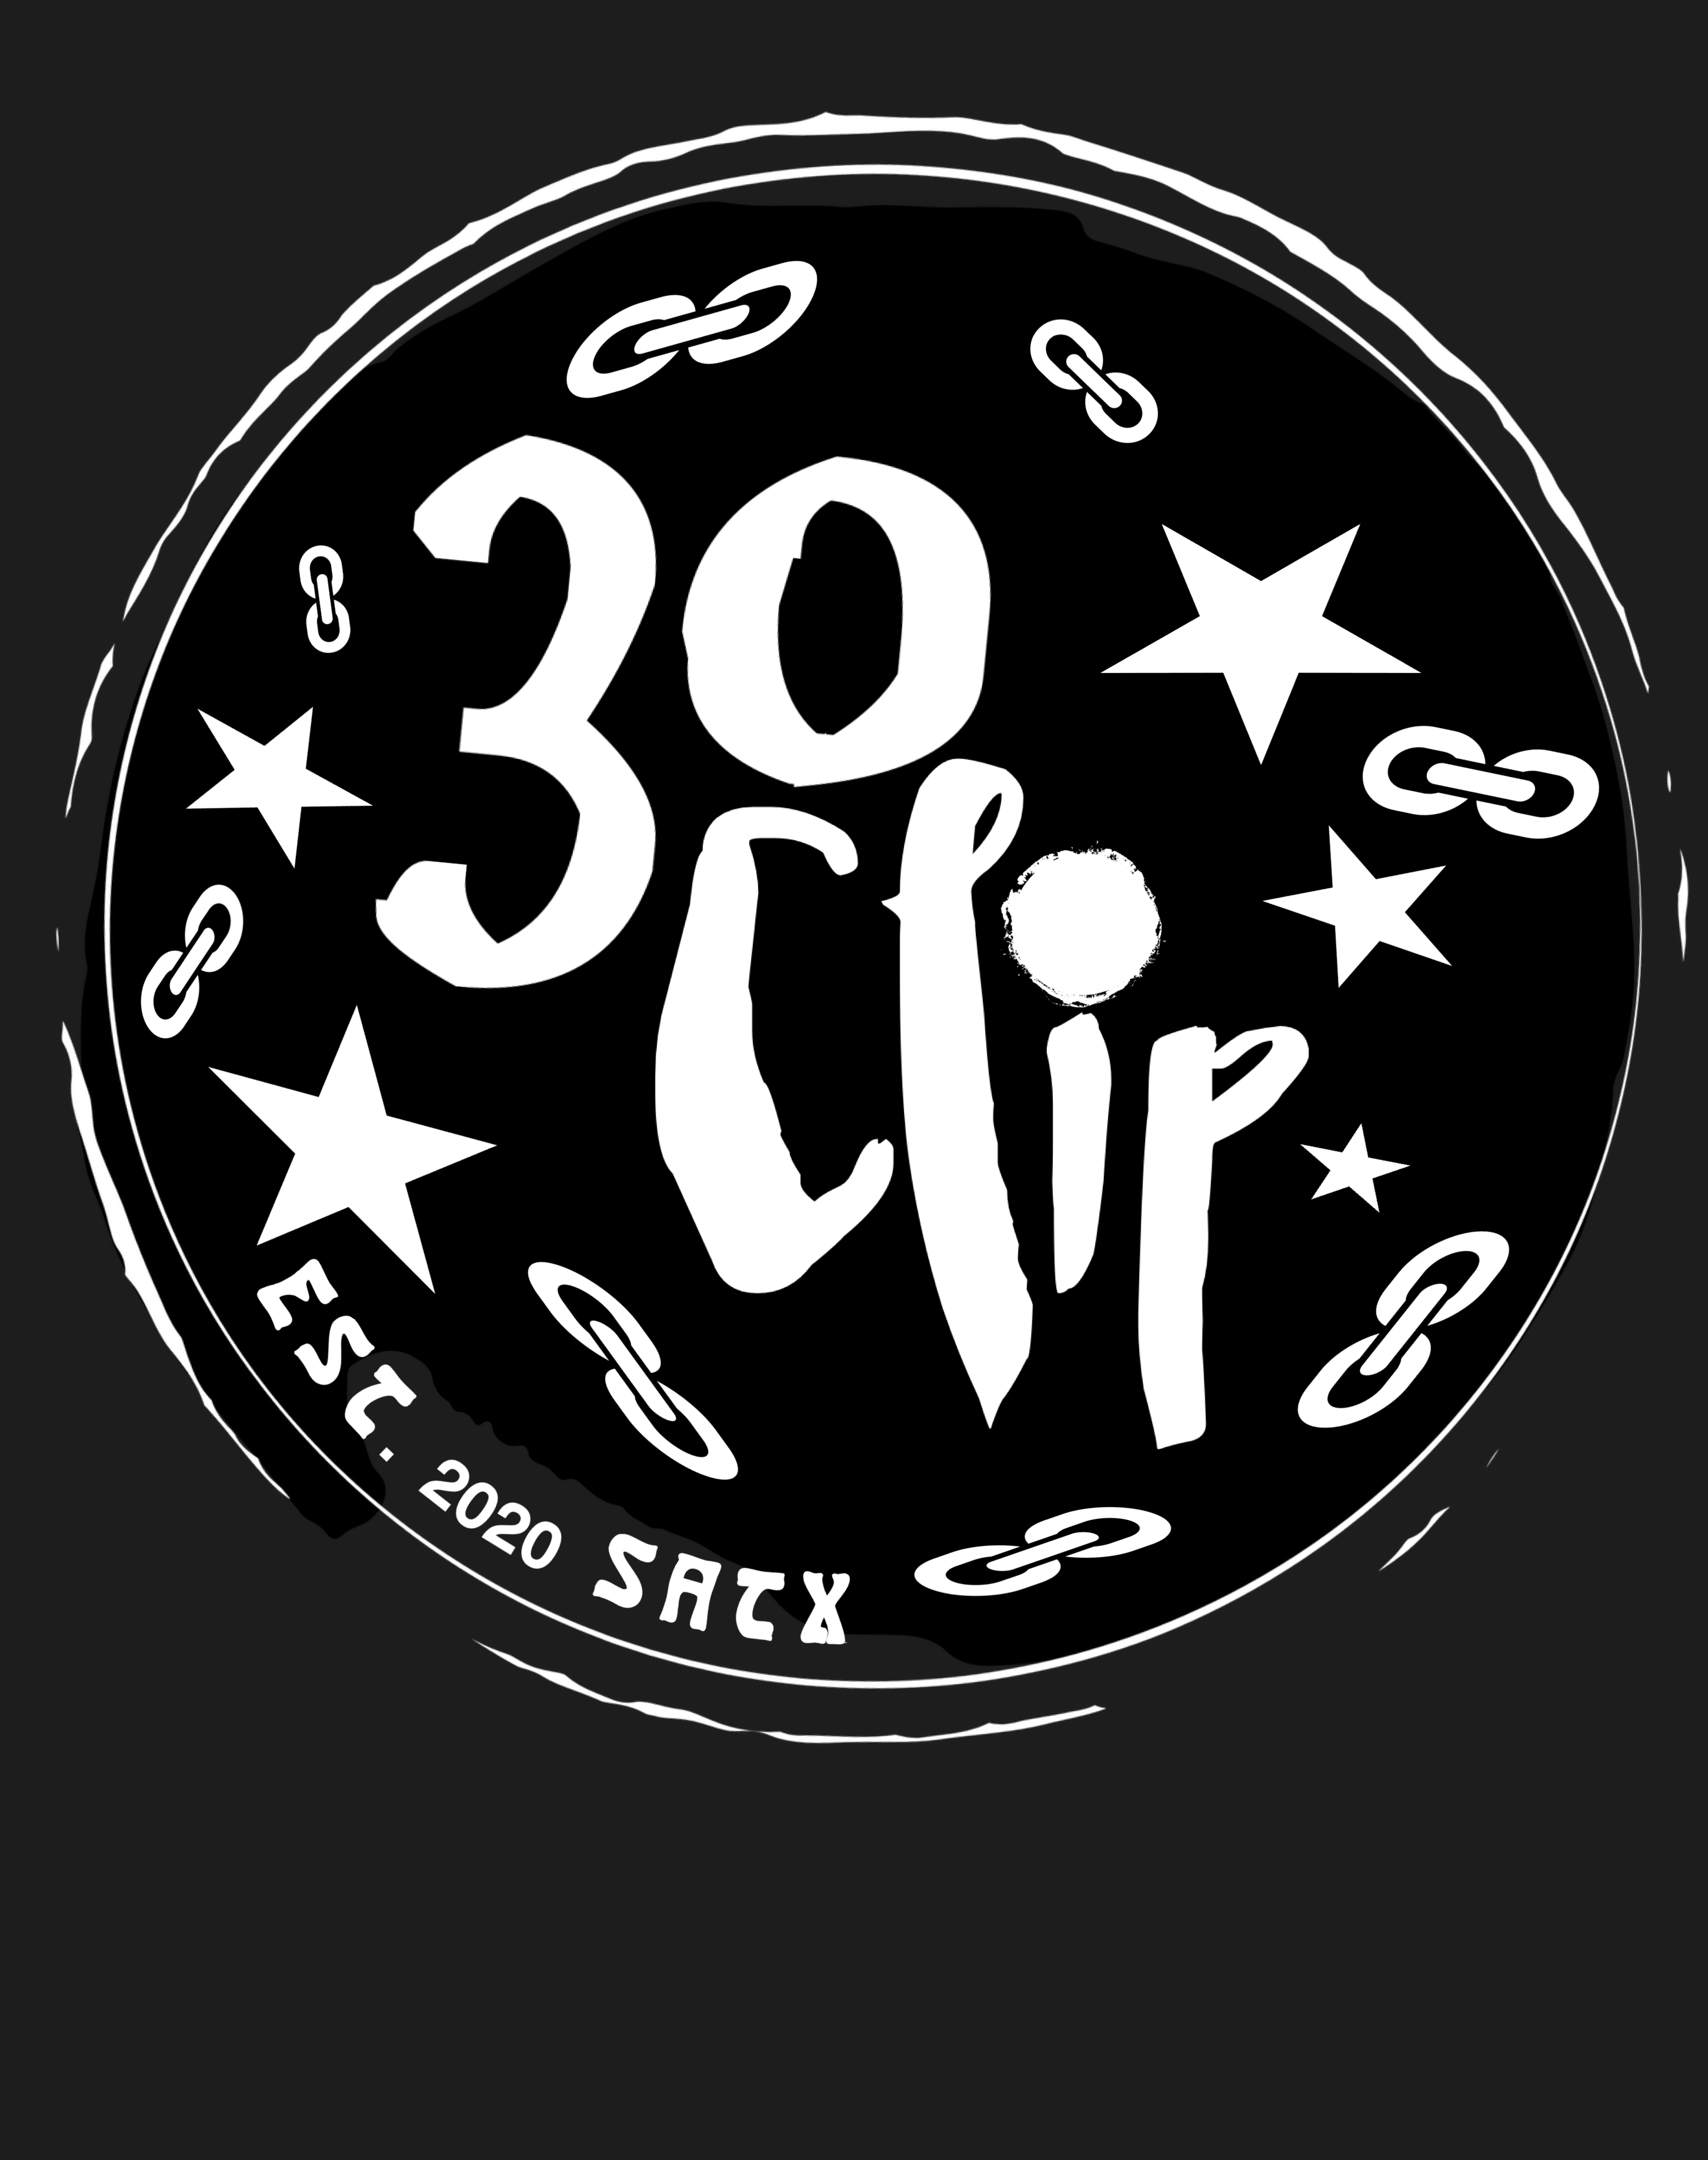 30 Clip Skate co.